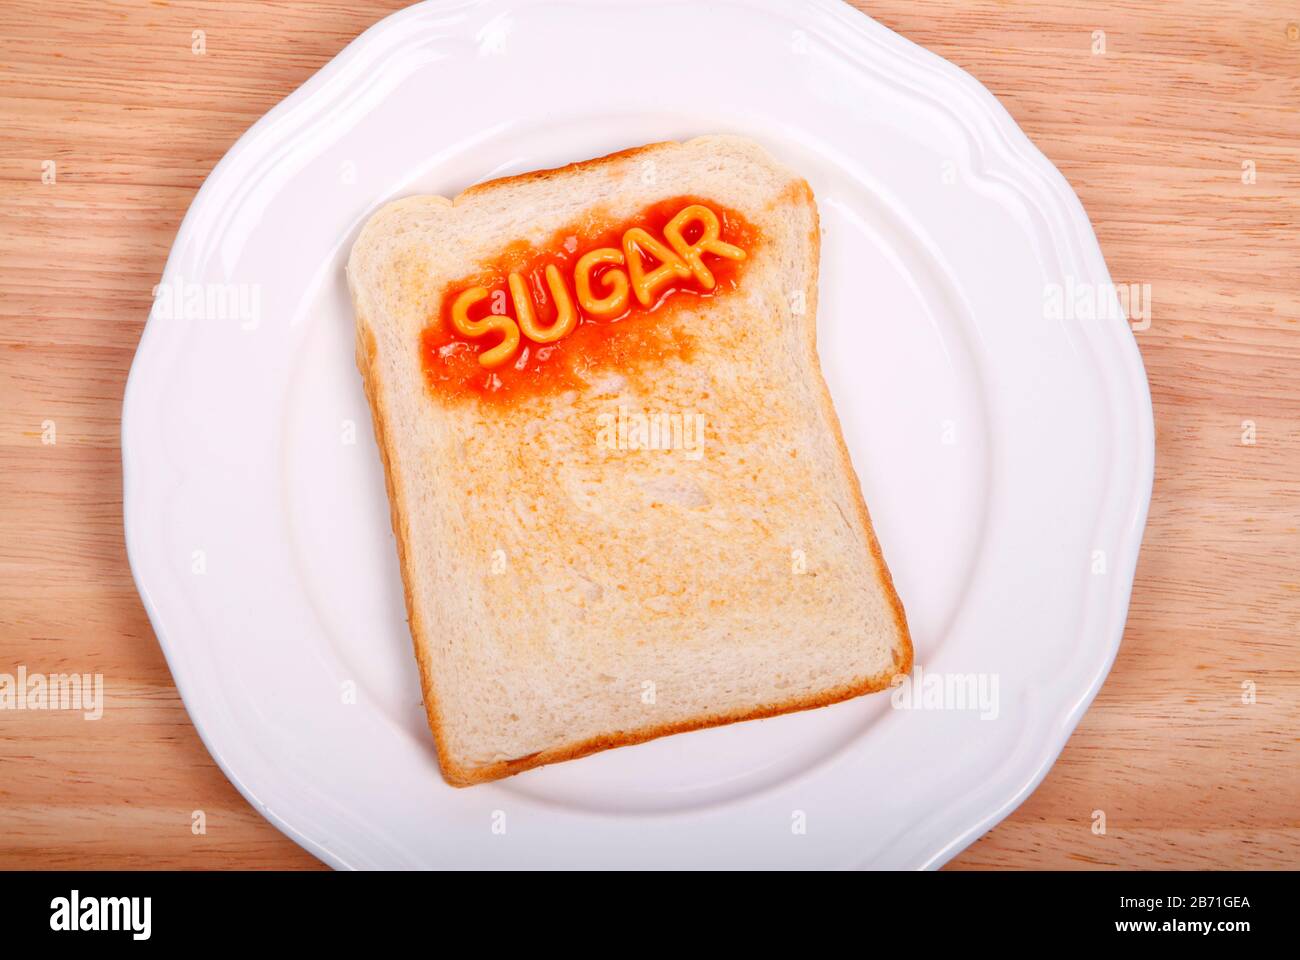 La palabra azúcar deletreada en una rebanada de pan tostado con espaguetis del alfabeto Foto de stock